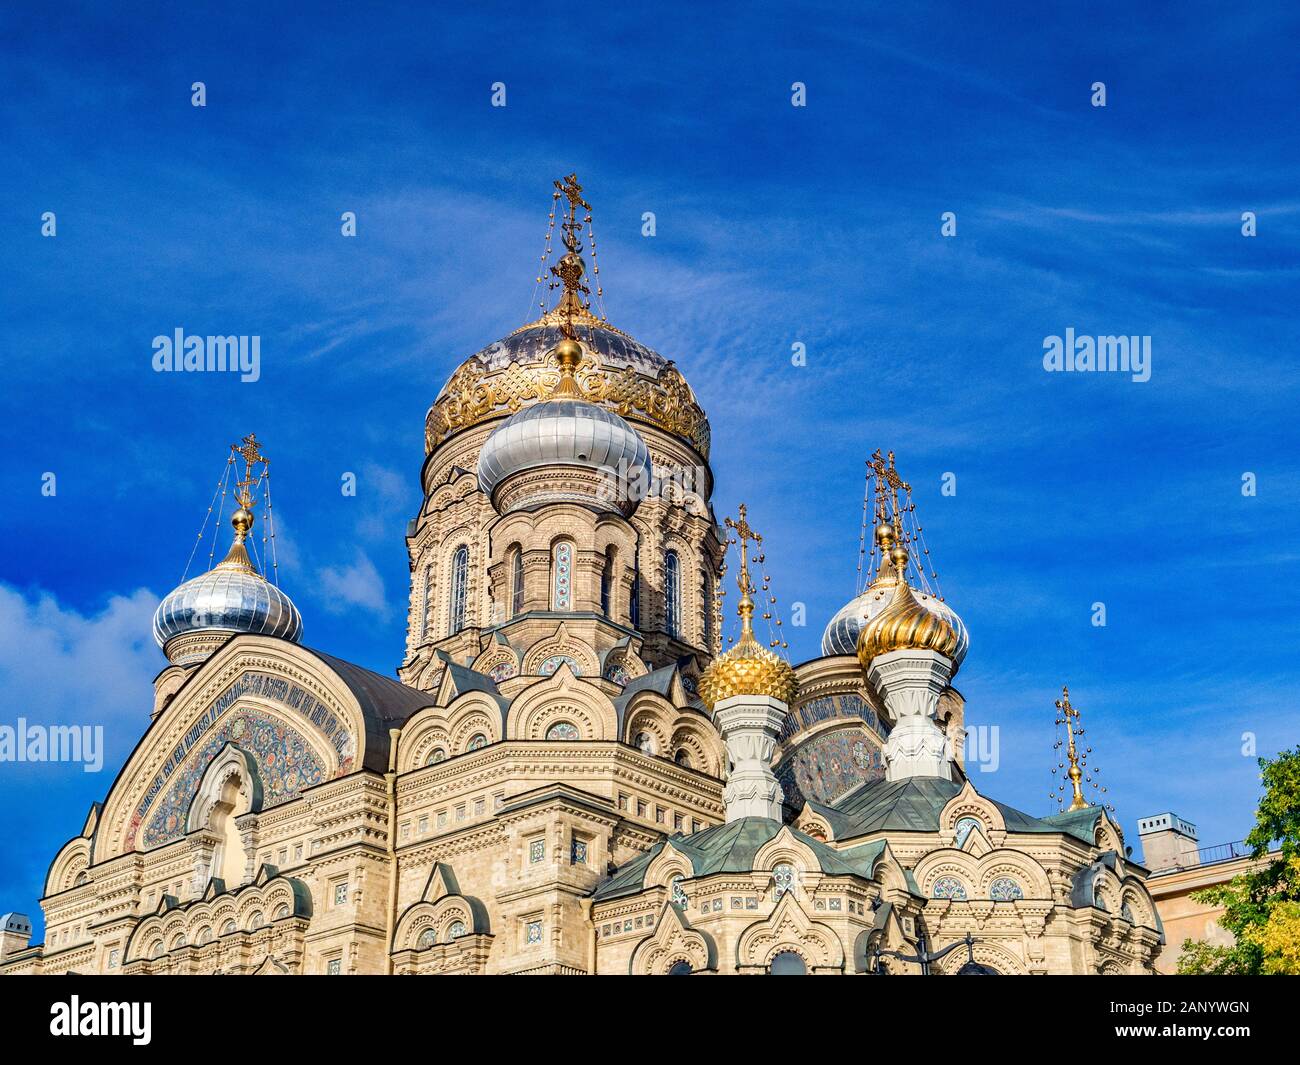 18 Septembre 2018 : St Petersburg, Russie - Église de l'assomption de Marie, sur la Neva Embankment, détail de l'architecture fantastique et l'onio Banque D'Images